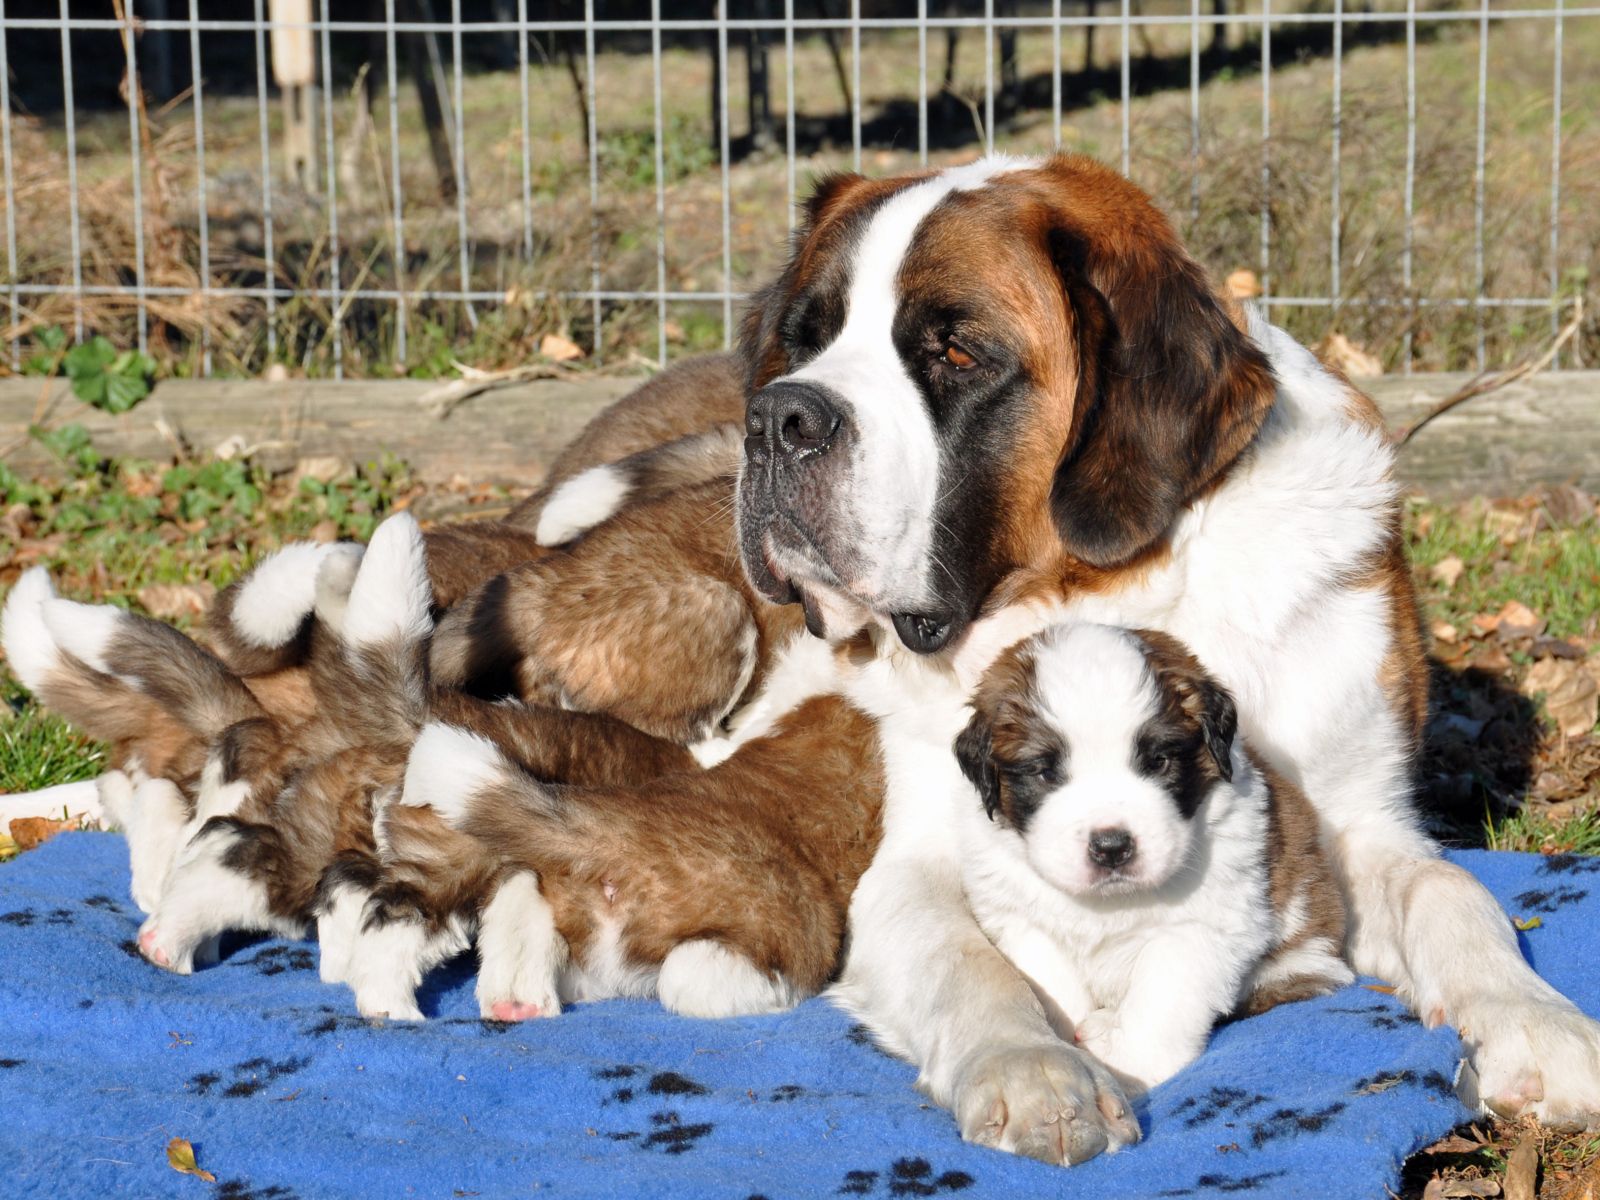 St. Bernard puppies with mom Desktop wallpaper 1600x1200